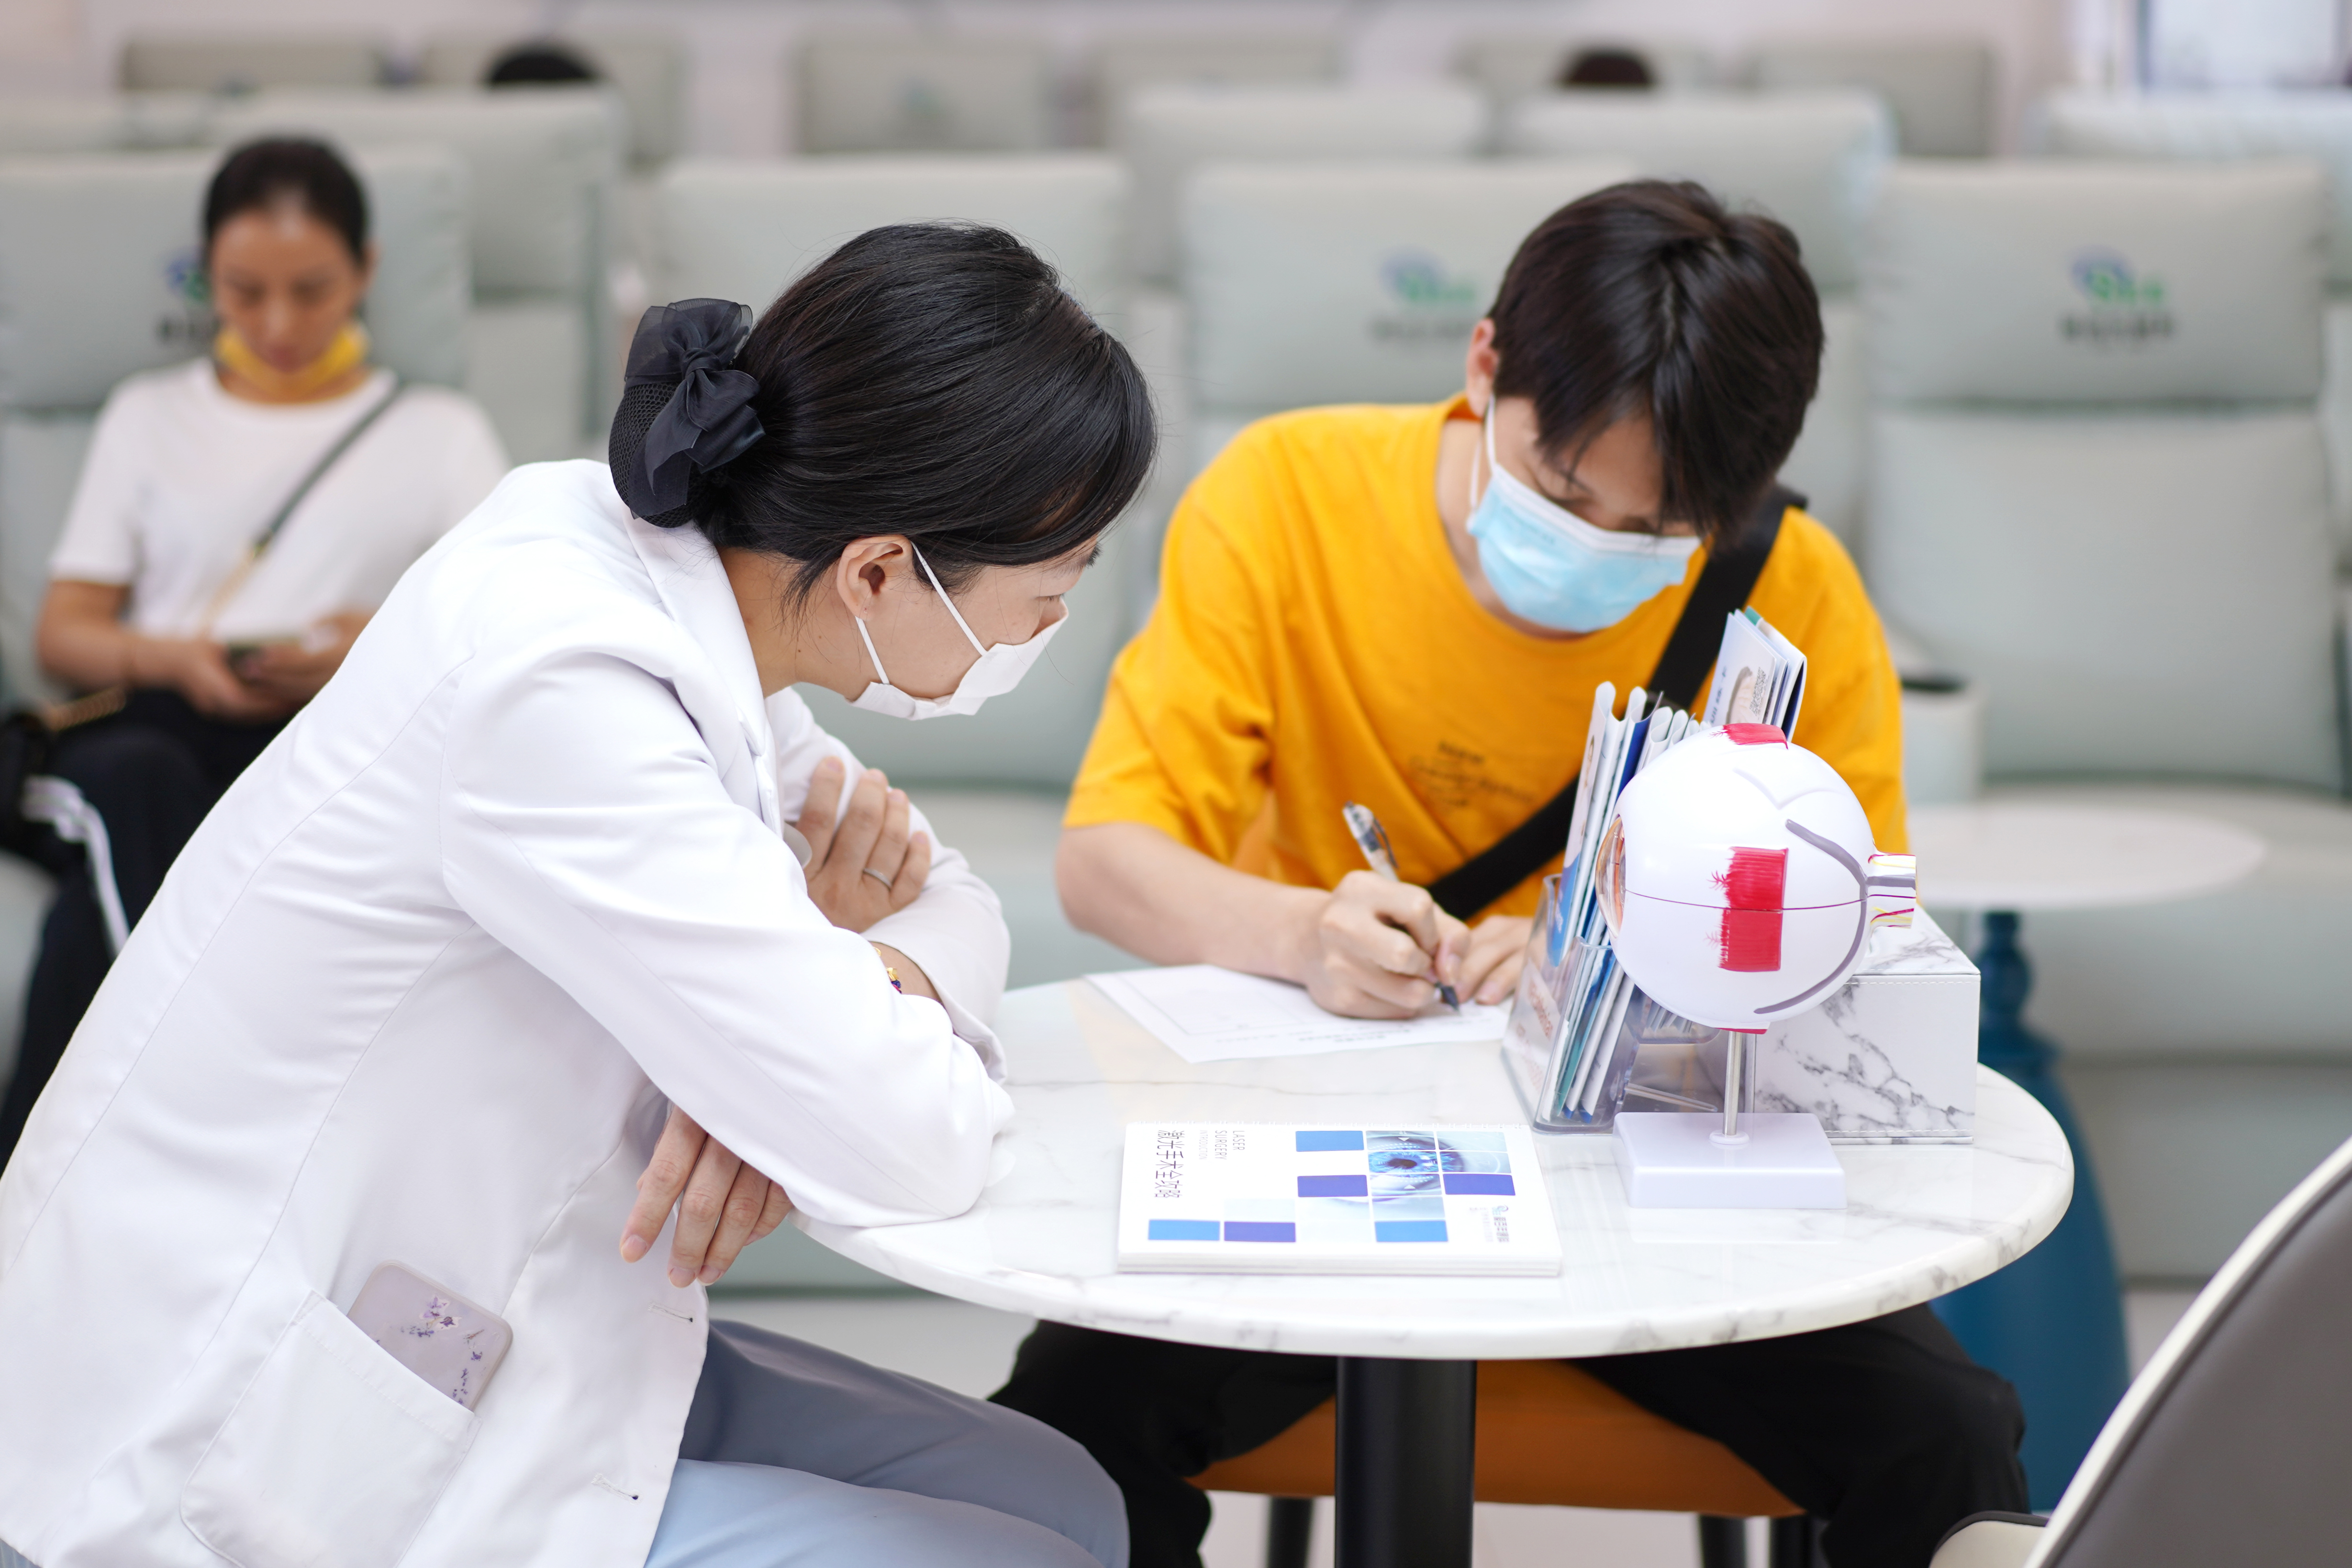 广州做近视矫正的医院哪家更权威?